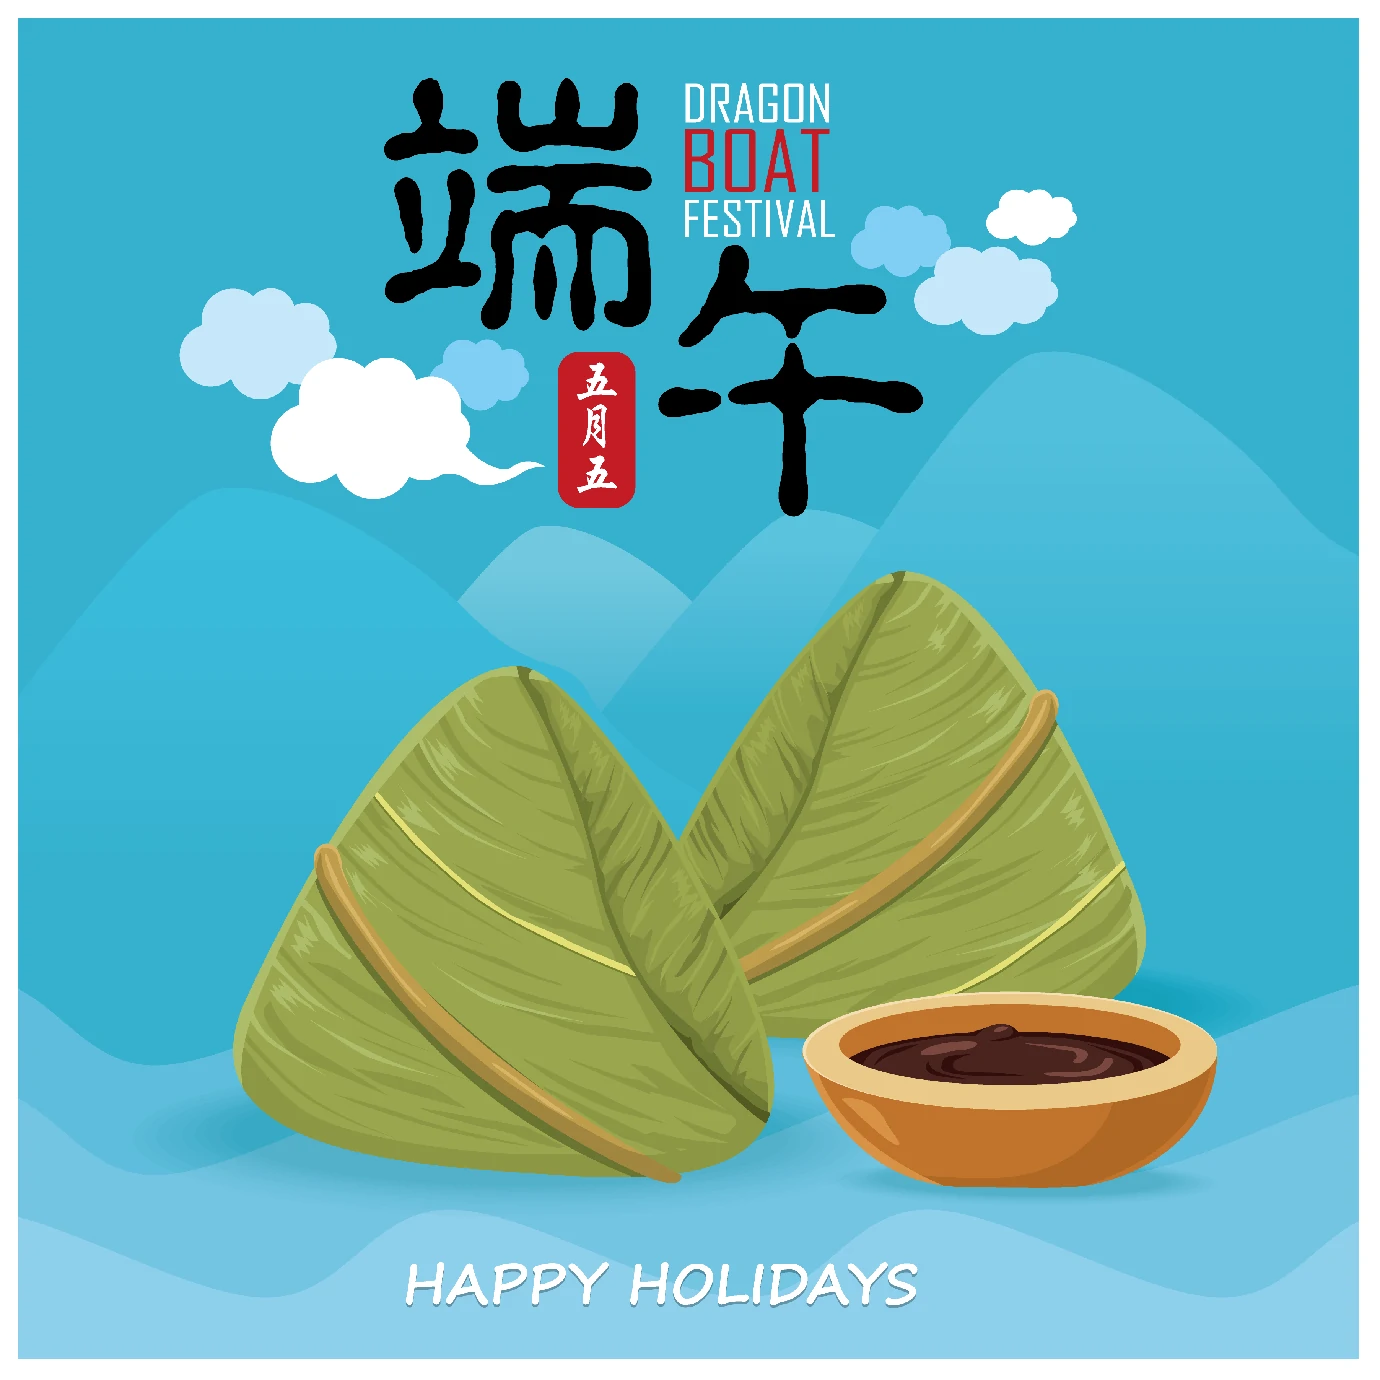 中国传统节日卡通手绘端午节赛龙舟粽子插画海报AI矢量设计素材【001】